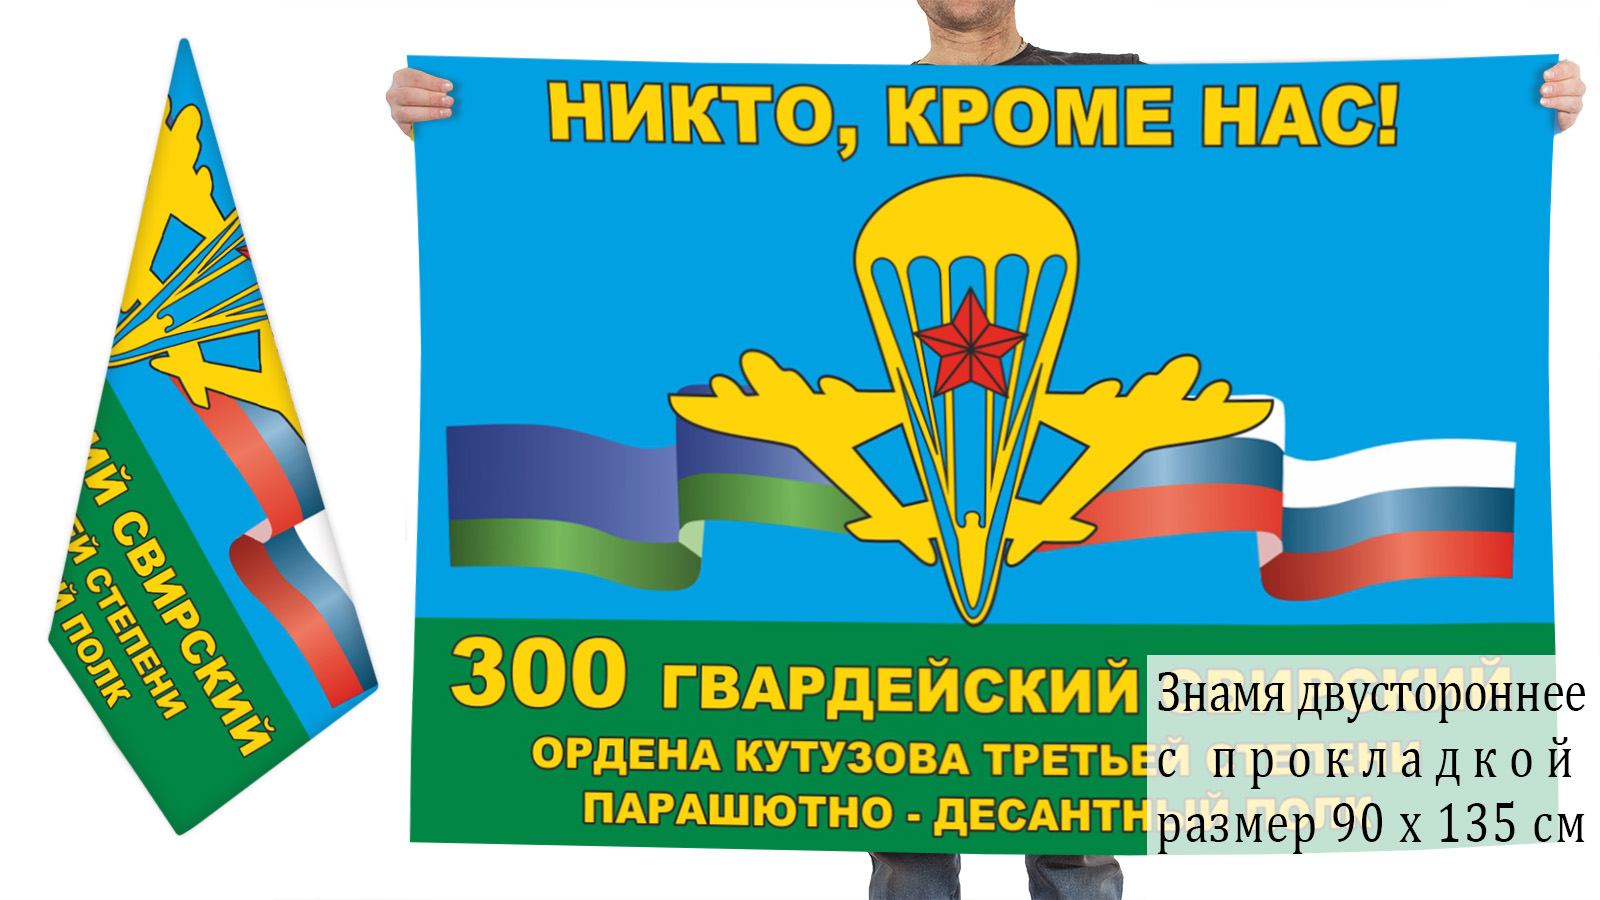 Двусторонний флаг 300 ПДП с девизом "Никто, кроме нас!"